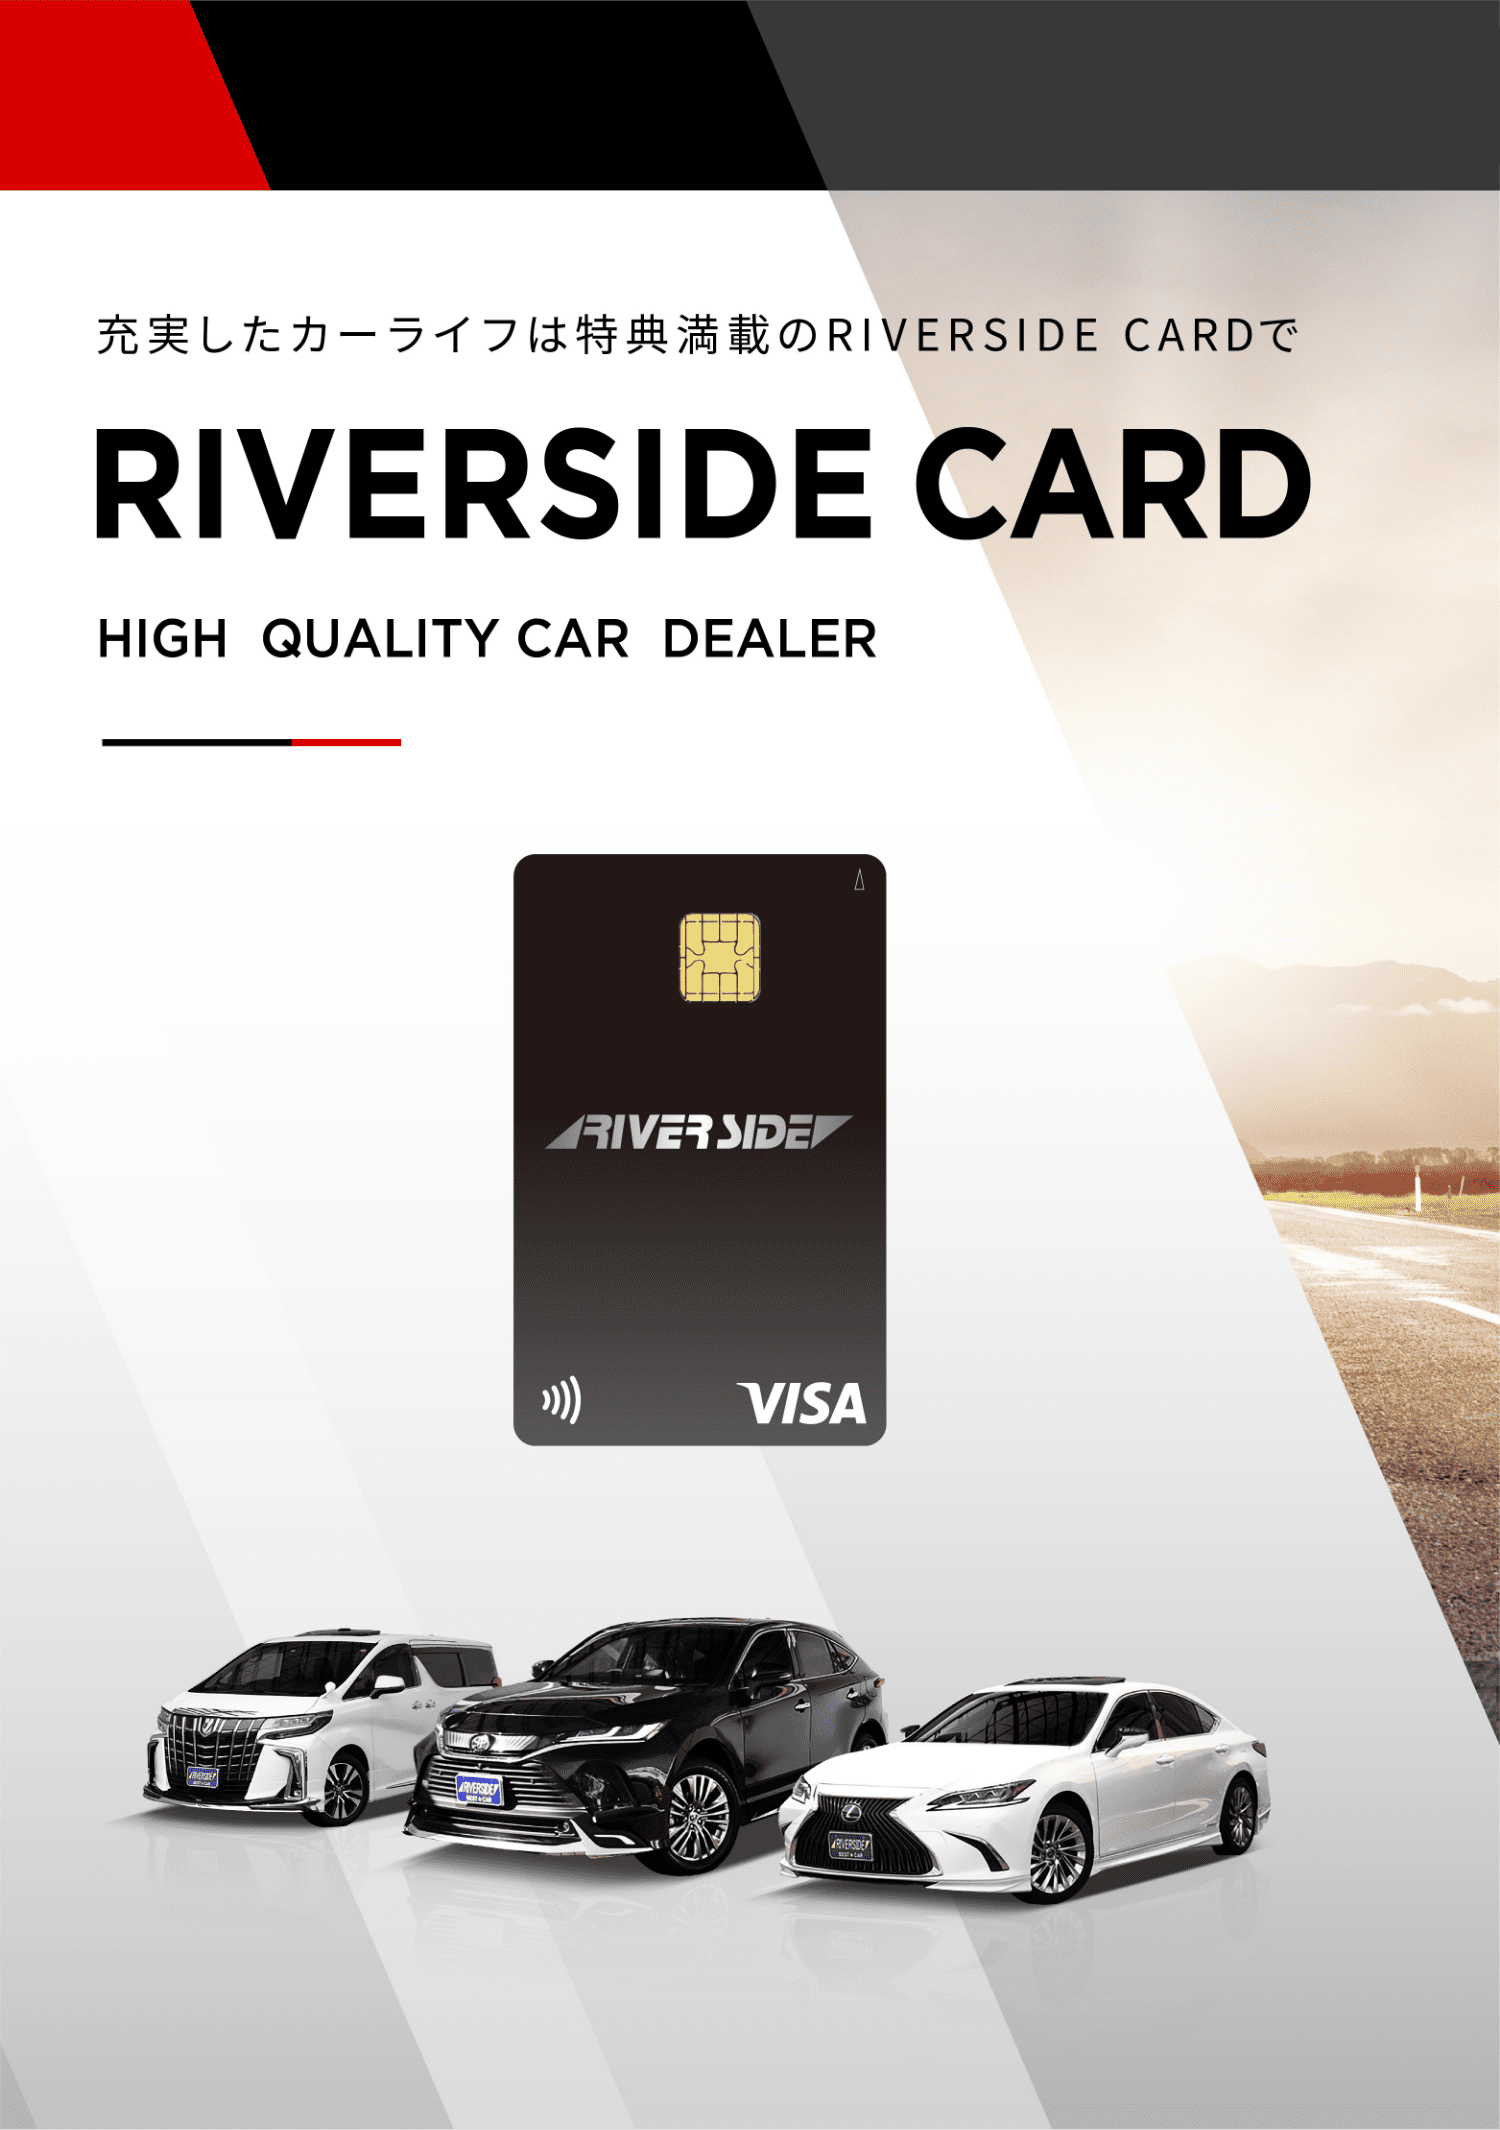 充実したカーライフは特典満載のRIVERSIDE CARDでRIVERSIDE CARD HIGH QUALITY CAR DEALER